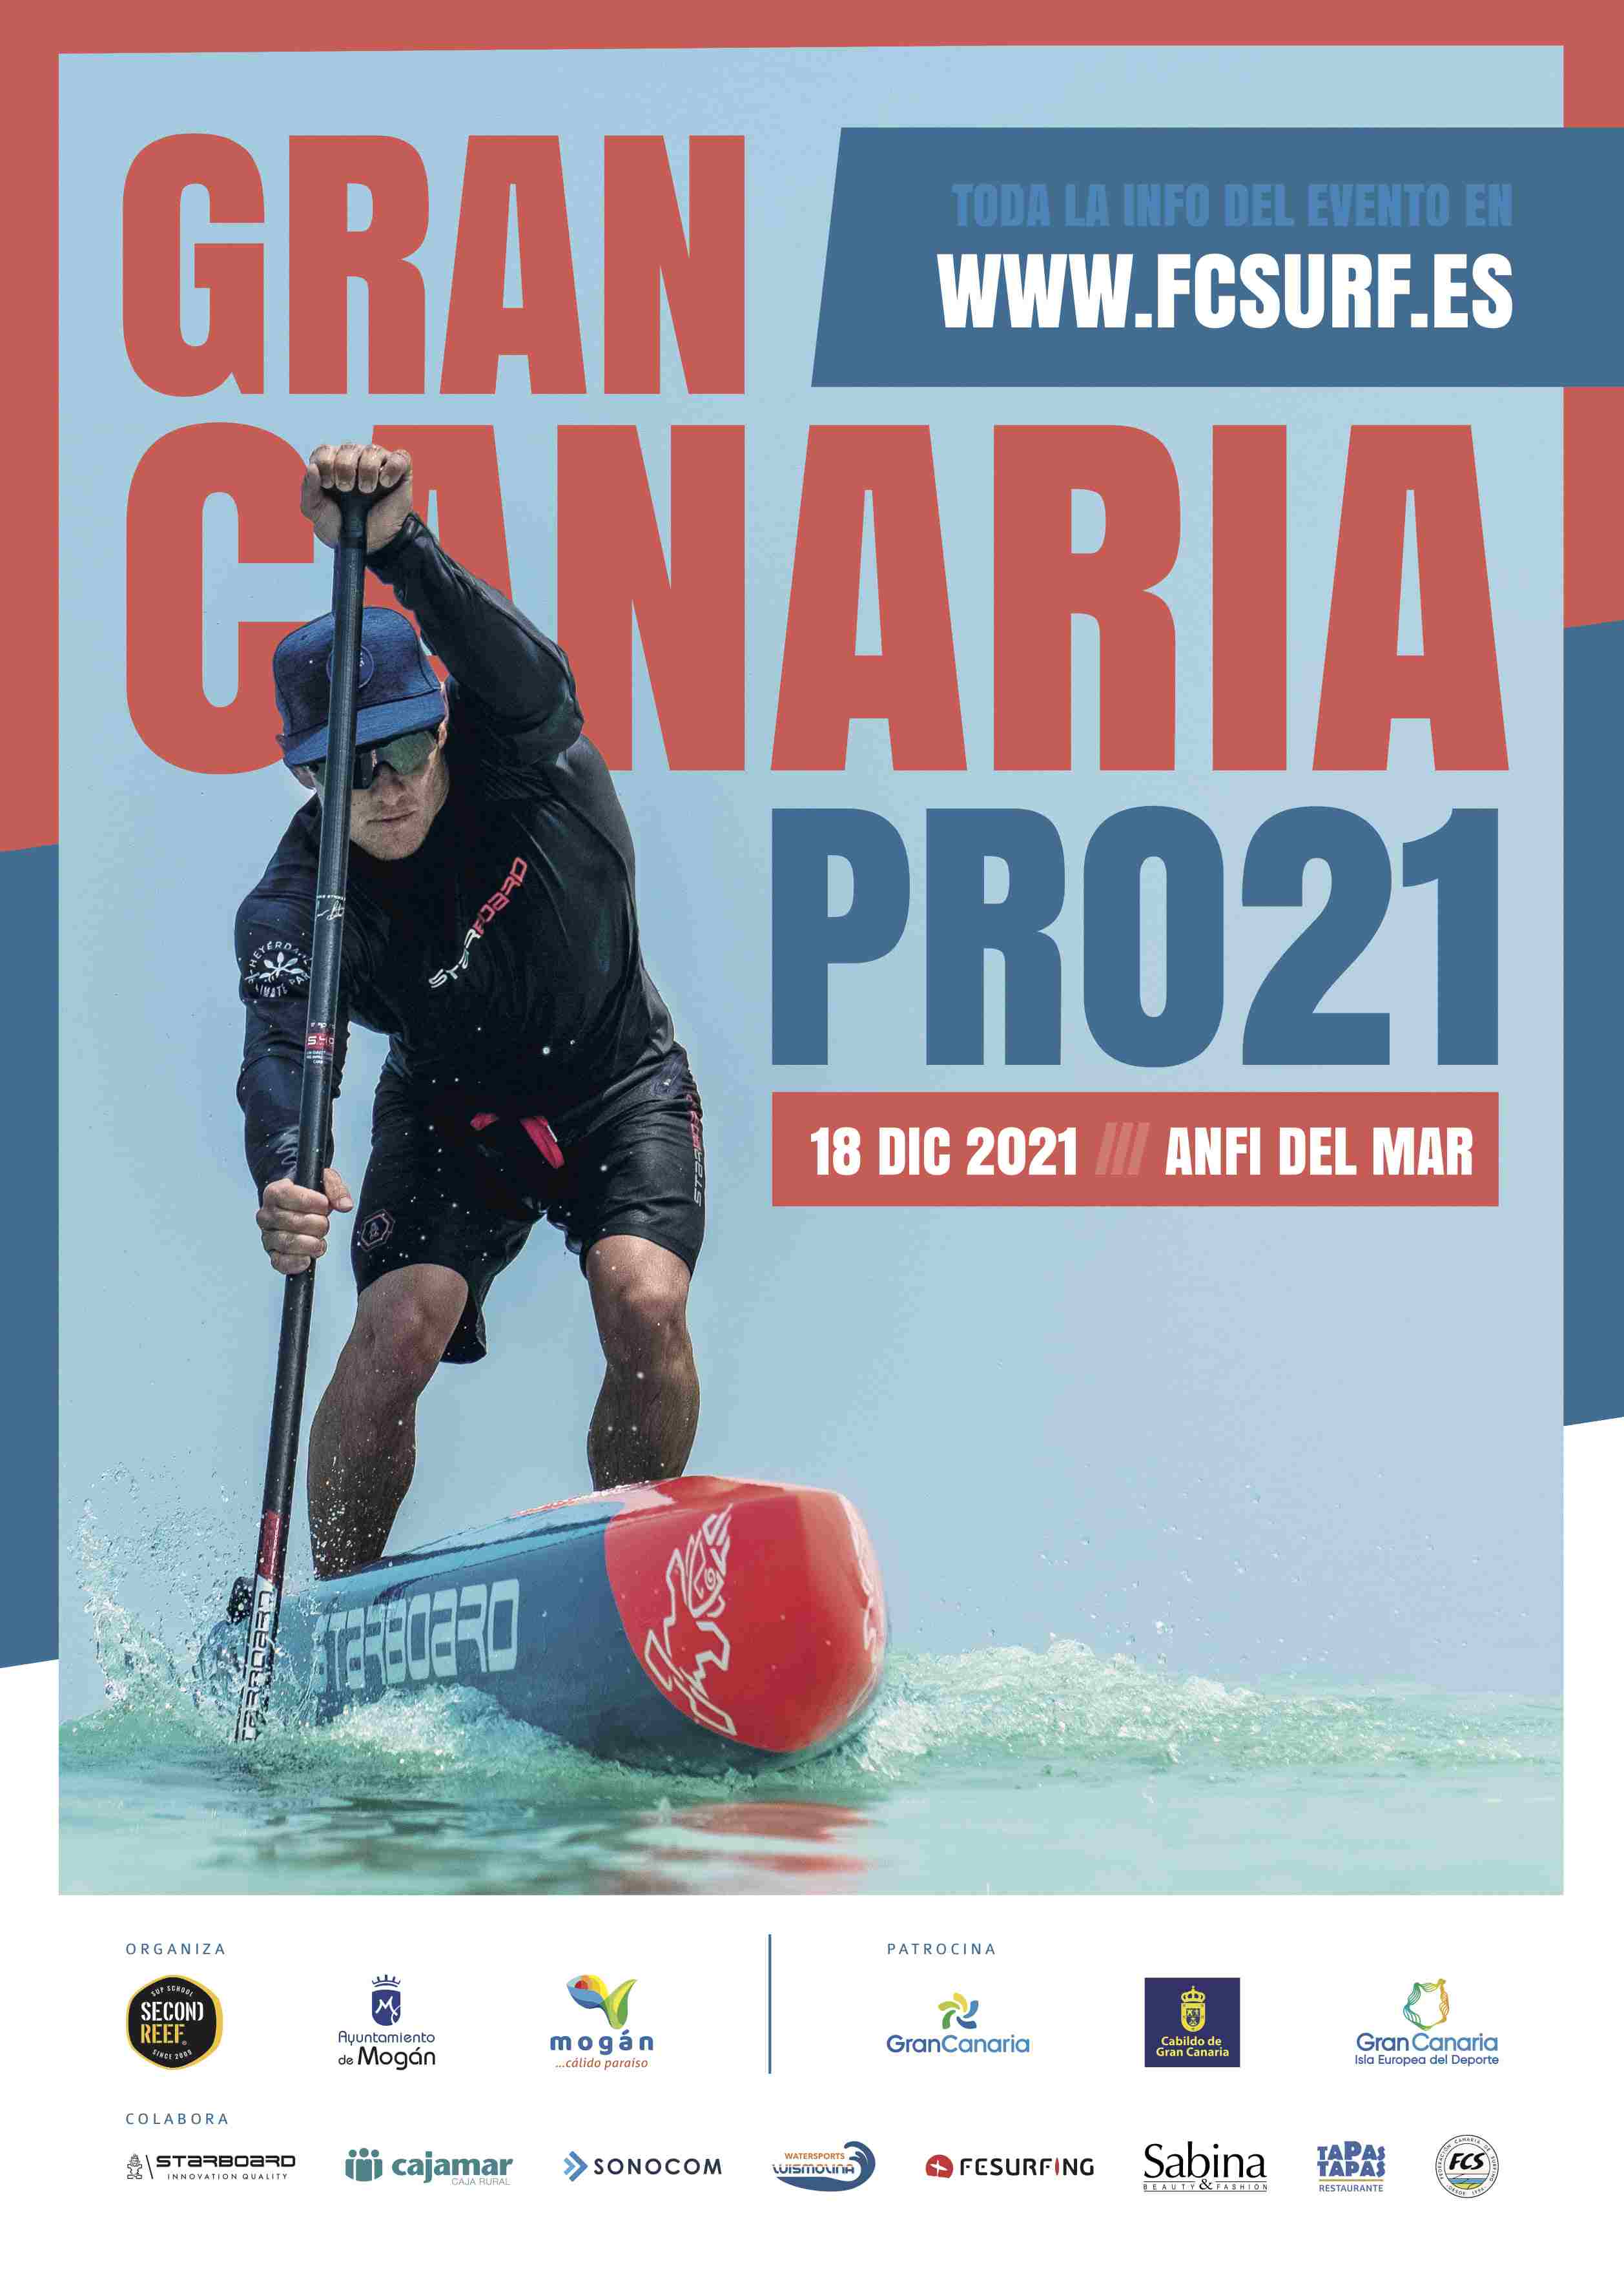 GRAN CANARIA PRO21 - NO FEDERADOS - Inscríbete